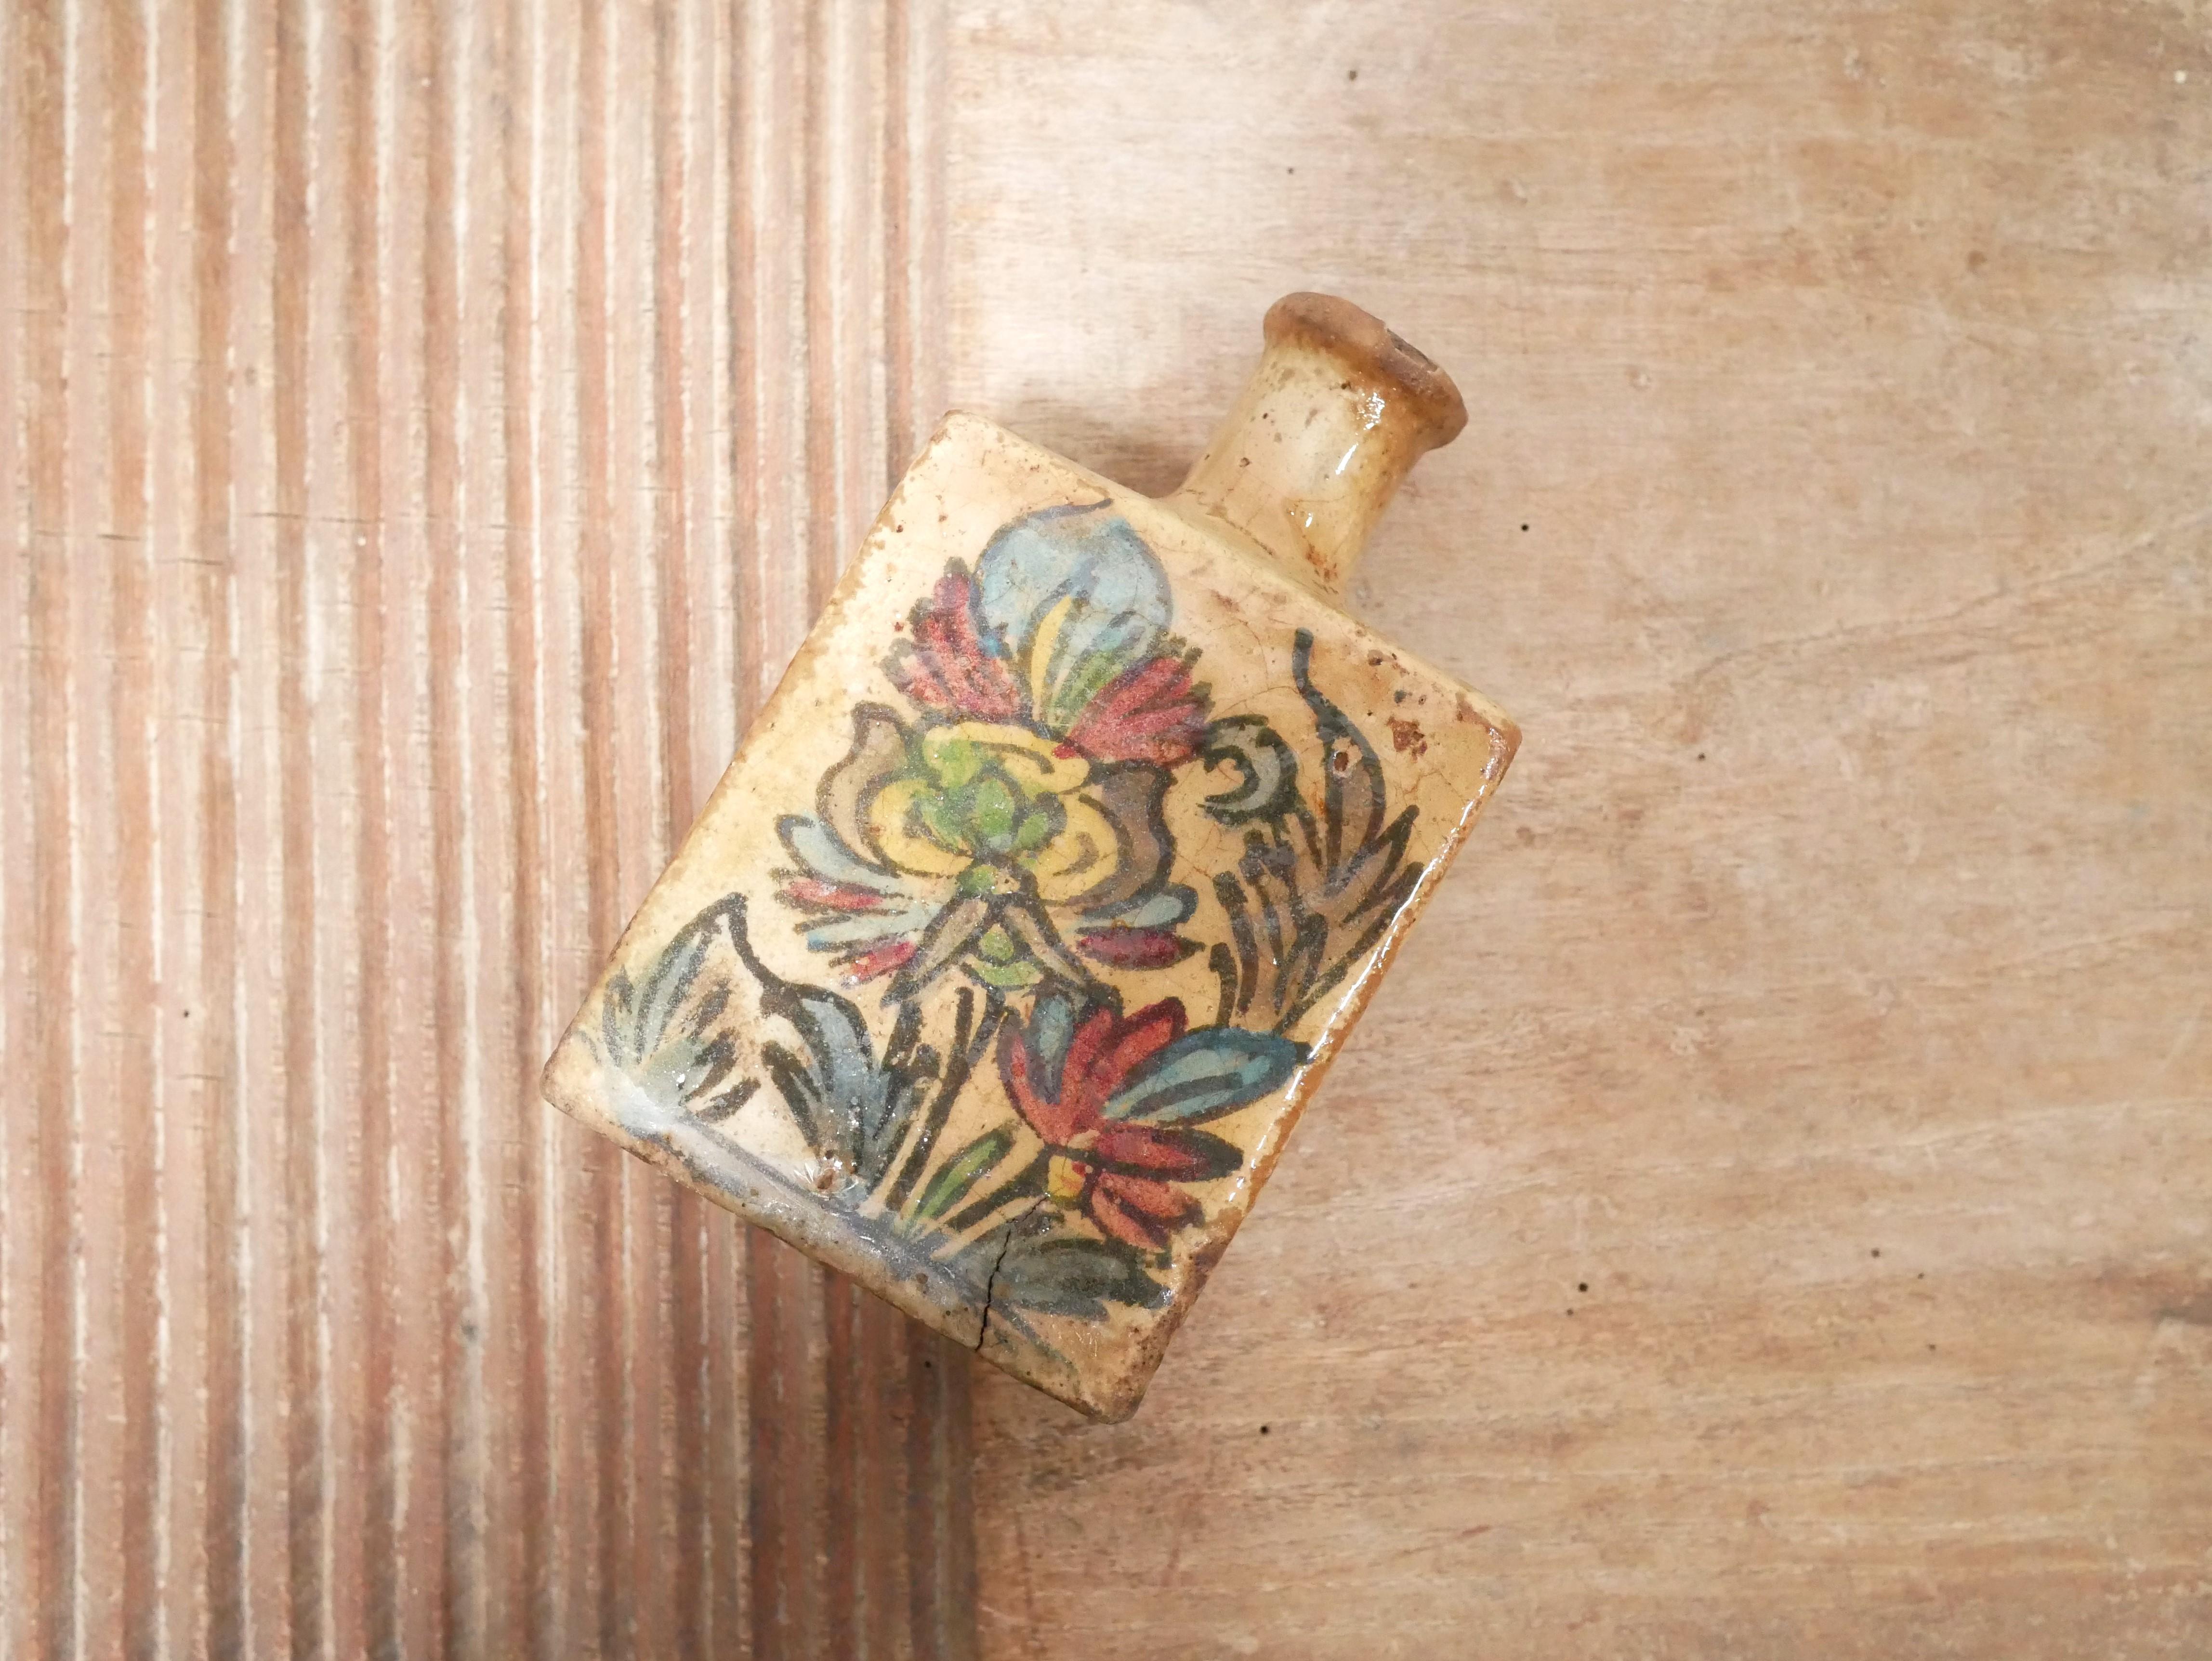 Handgefertigte glasierte Terrakotta-Flasche, Iran, Ende des 19. Jahrhunderts, Qajar-Dynastie.

Schöne warme Farbe, harmonische und moderne Form.
Dieser geschichtsträchtigen Flasche mangelt es nicht an Charakter und Eleganz. Es wird sich perfekt in